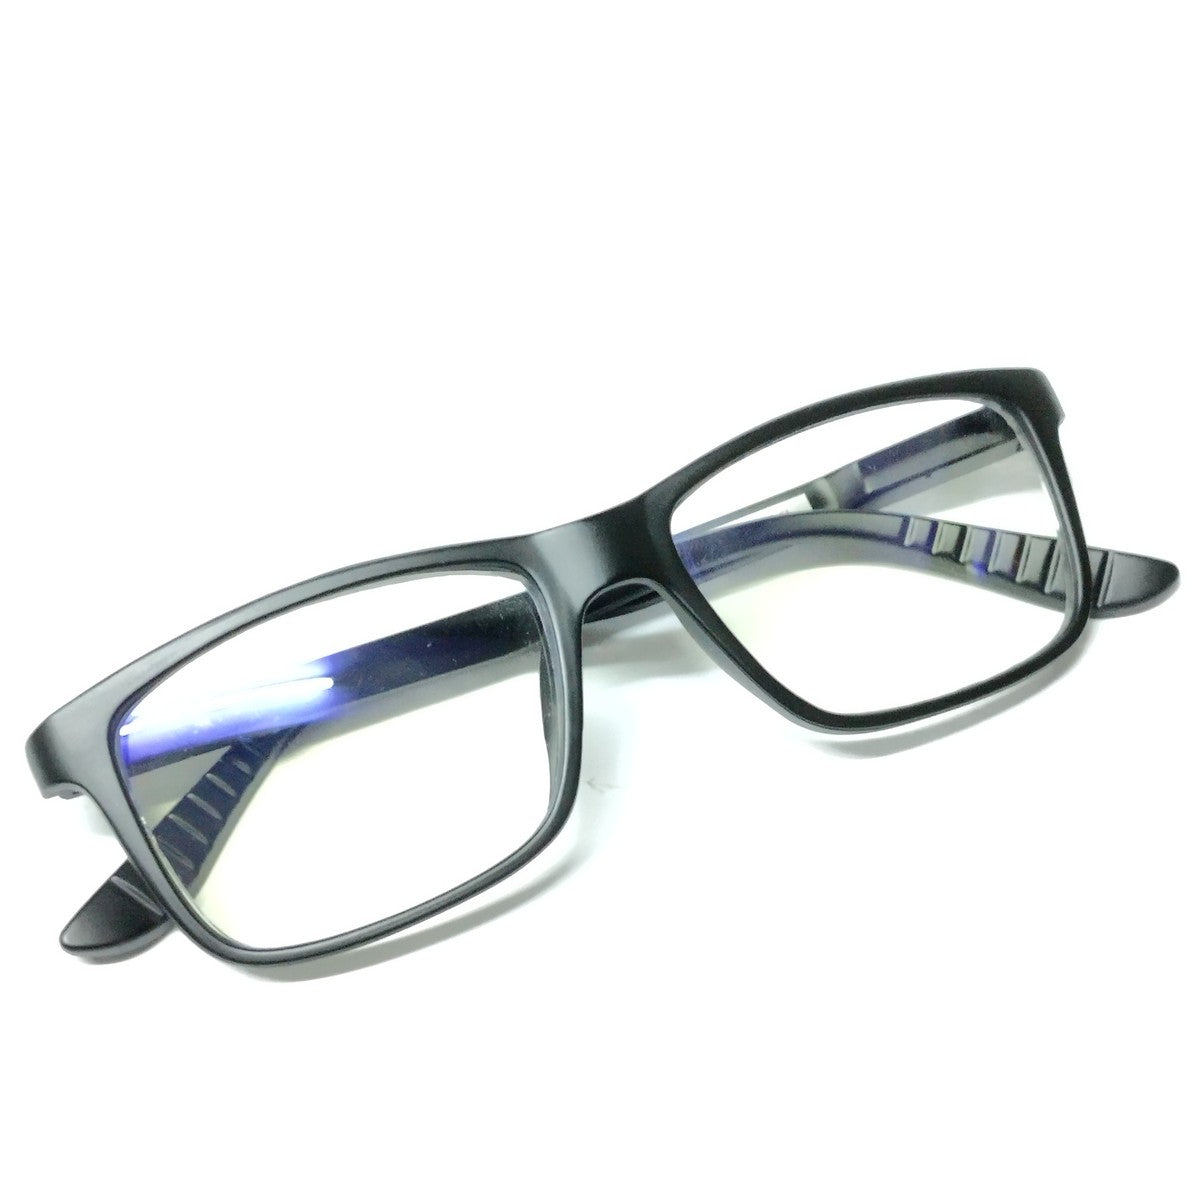 Black Rectangle Progressive Glasses for Computers Multifocal Reading Glasses for Men Women